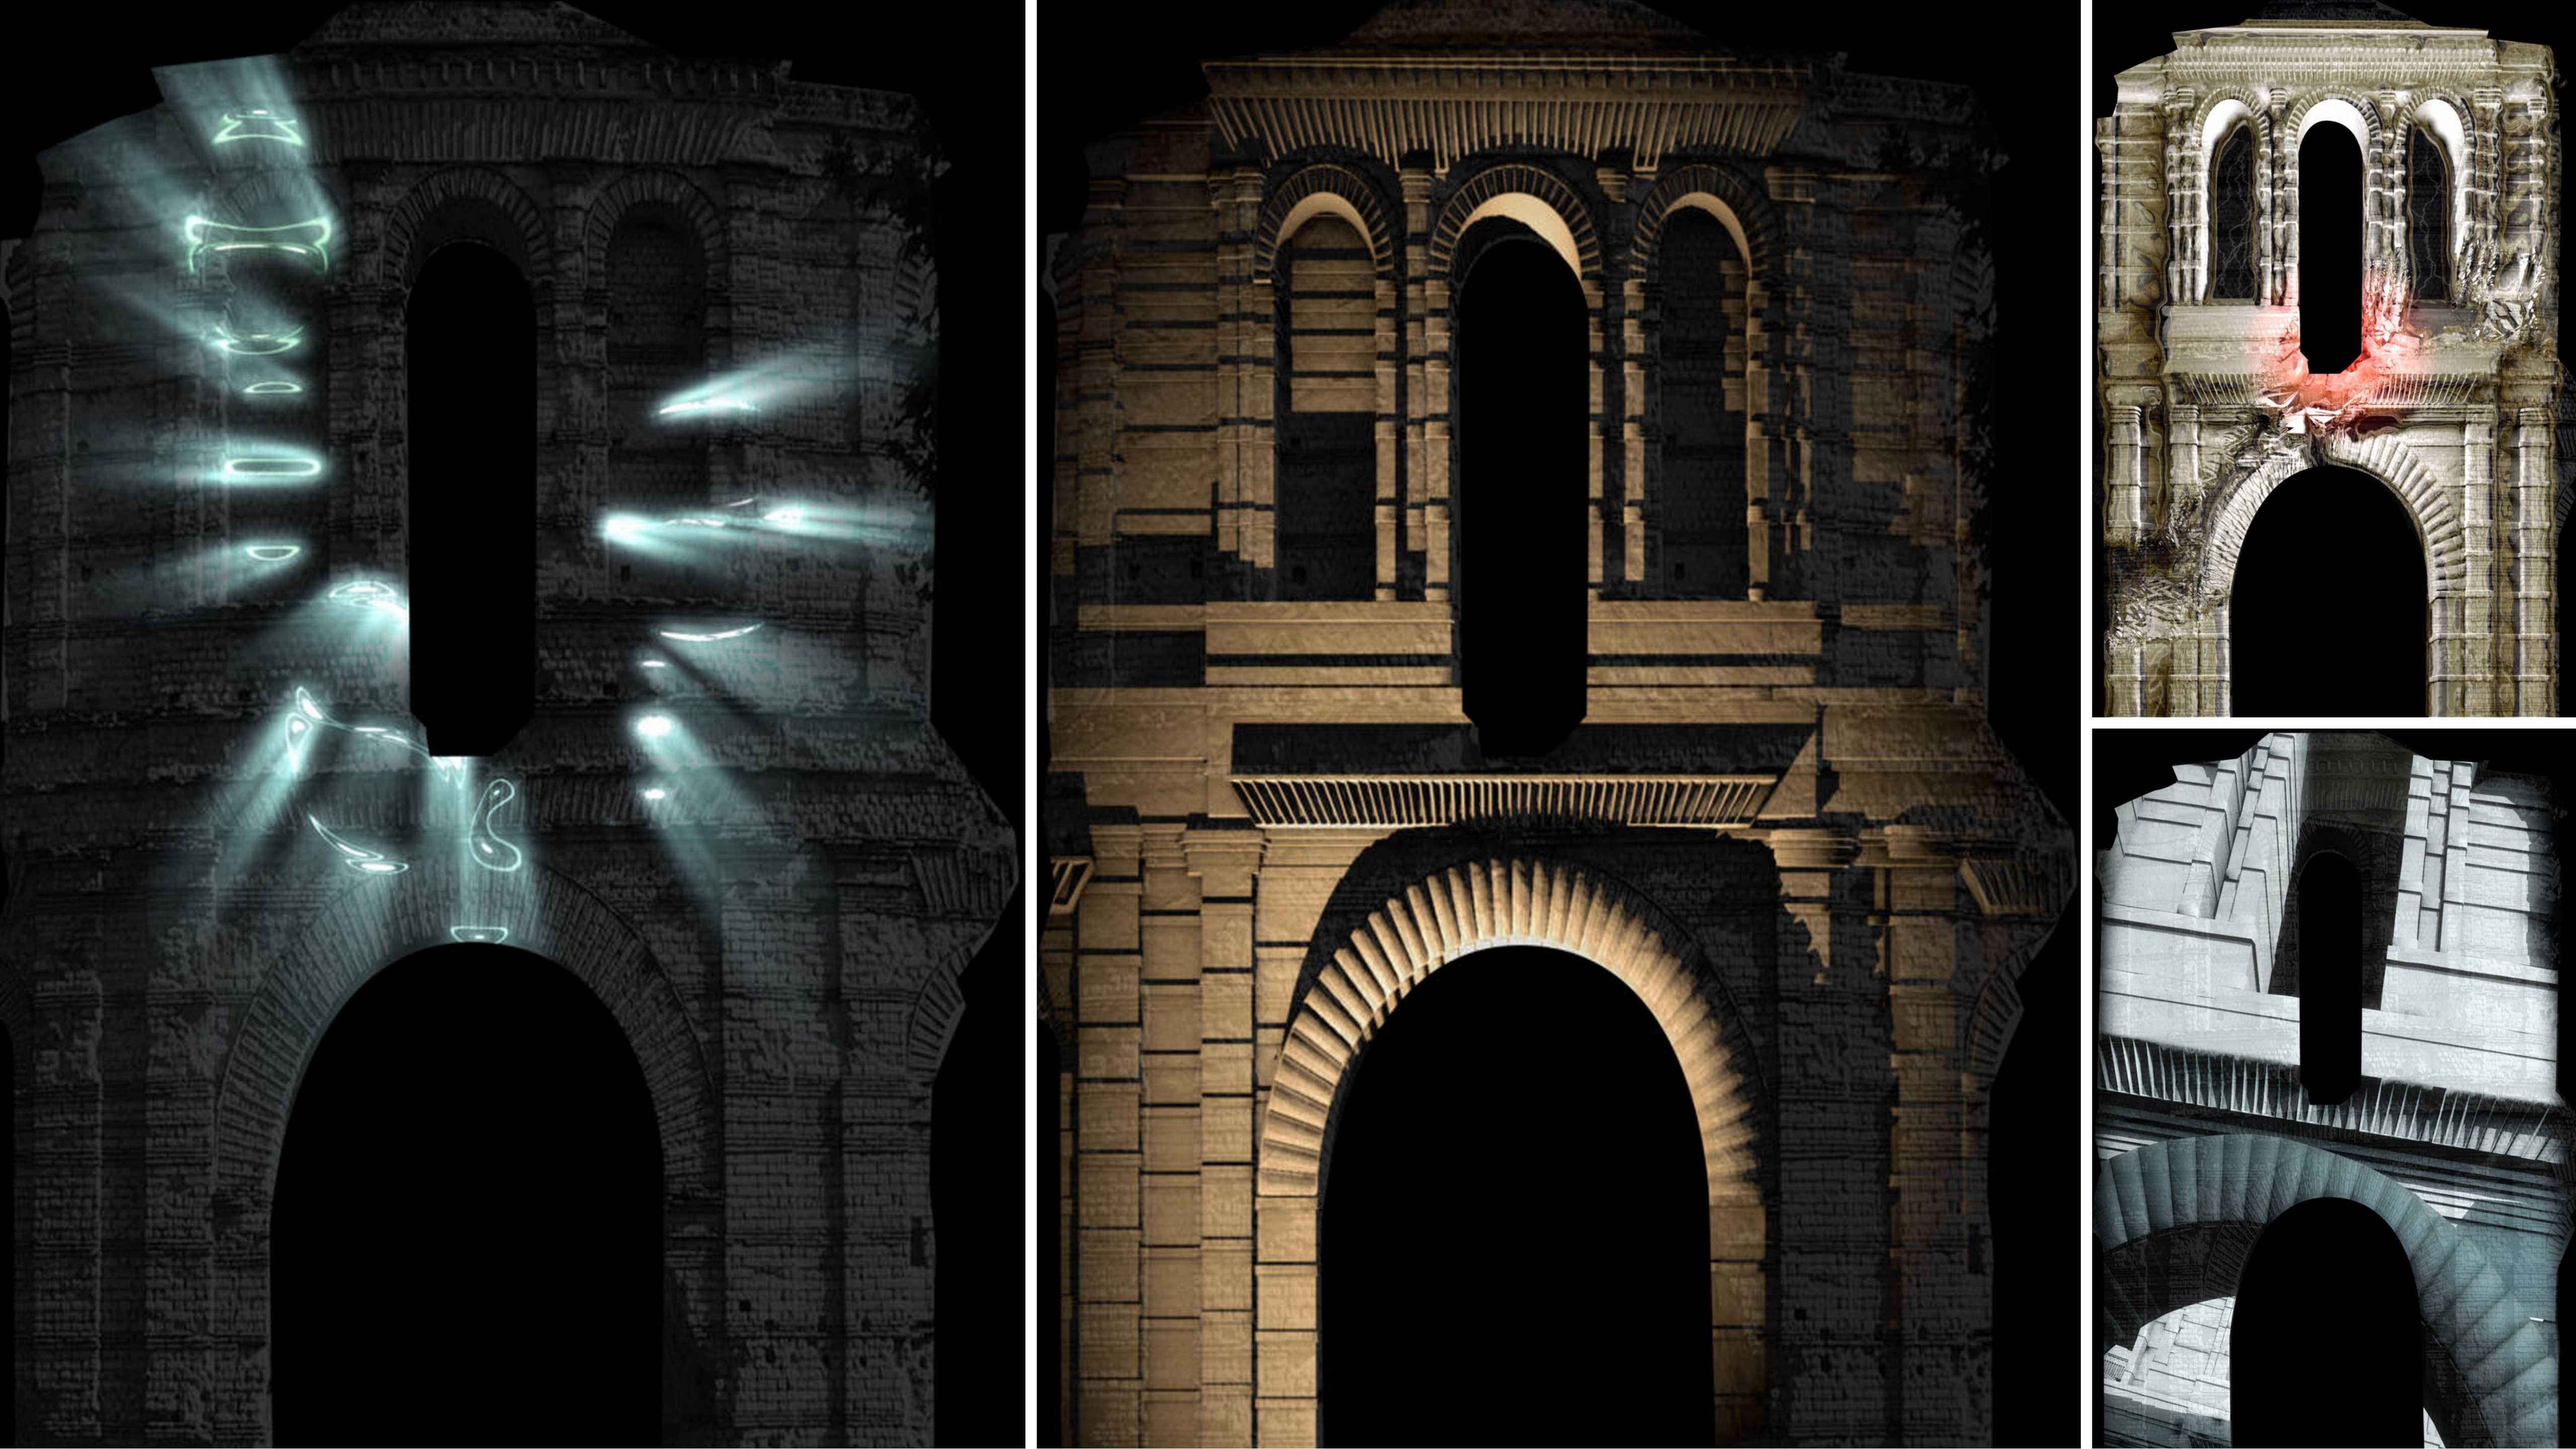 Lancement des "Journées du Patrimoine" à Bordeaux : "Dès l'Aube", un vidéo-mapping sur les ruines du Palais Gallien